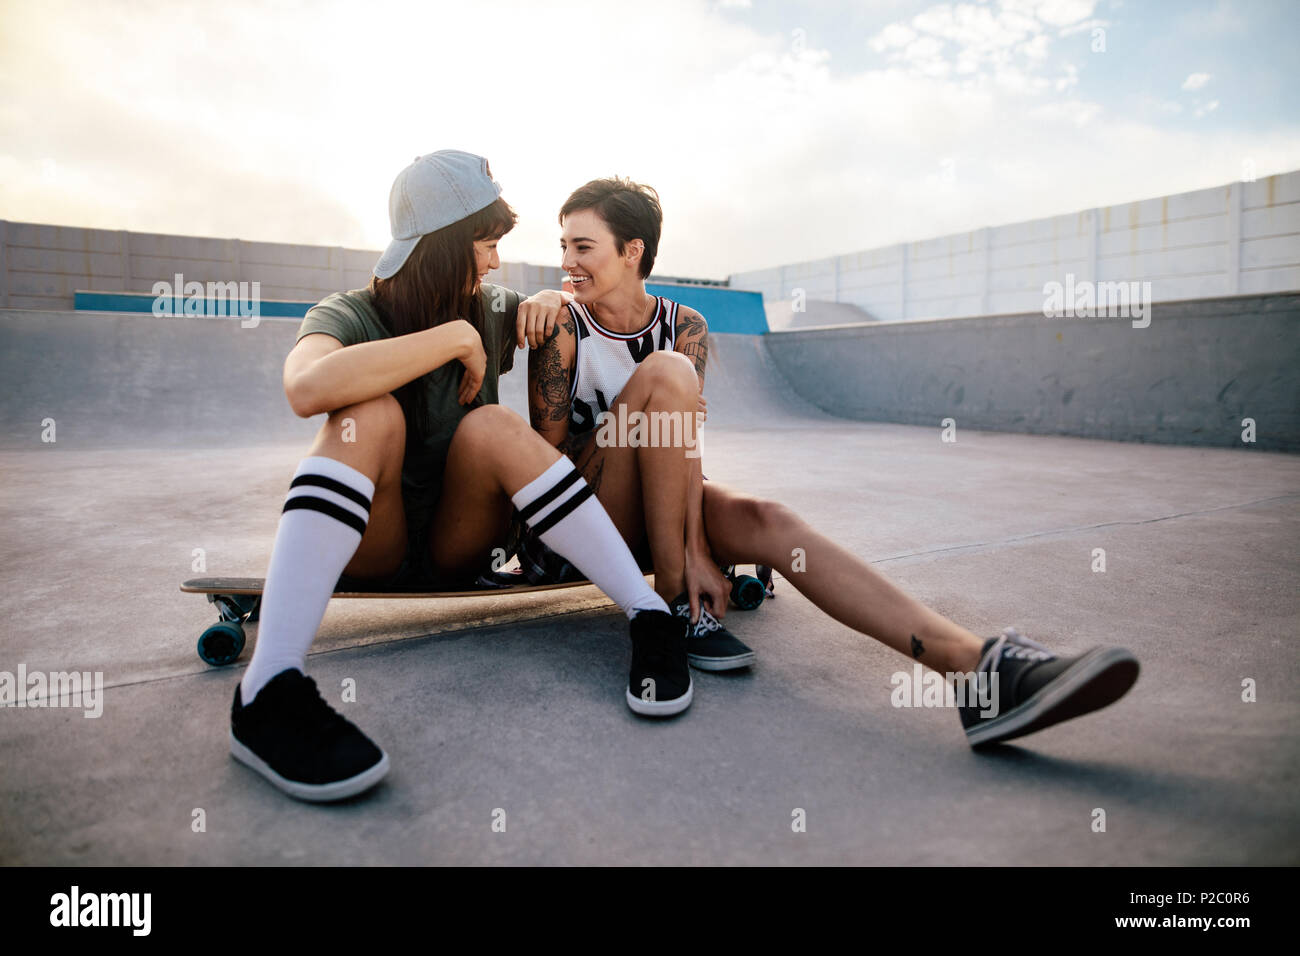 Dos amigas disfrutando de pasar tiempo juntos en el parque de skate. Mujer skateboarders sentado en placa larga y mirando el uno al otro. Foto de stock